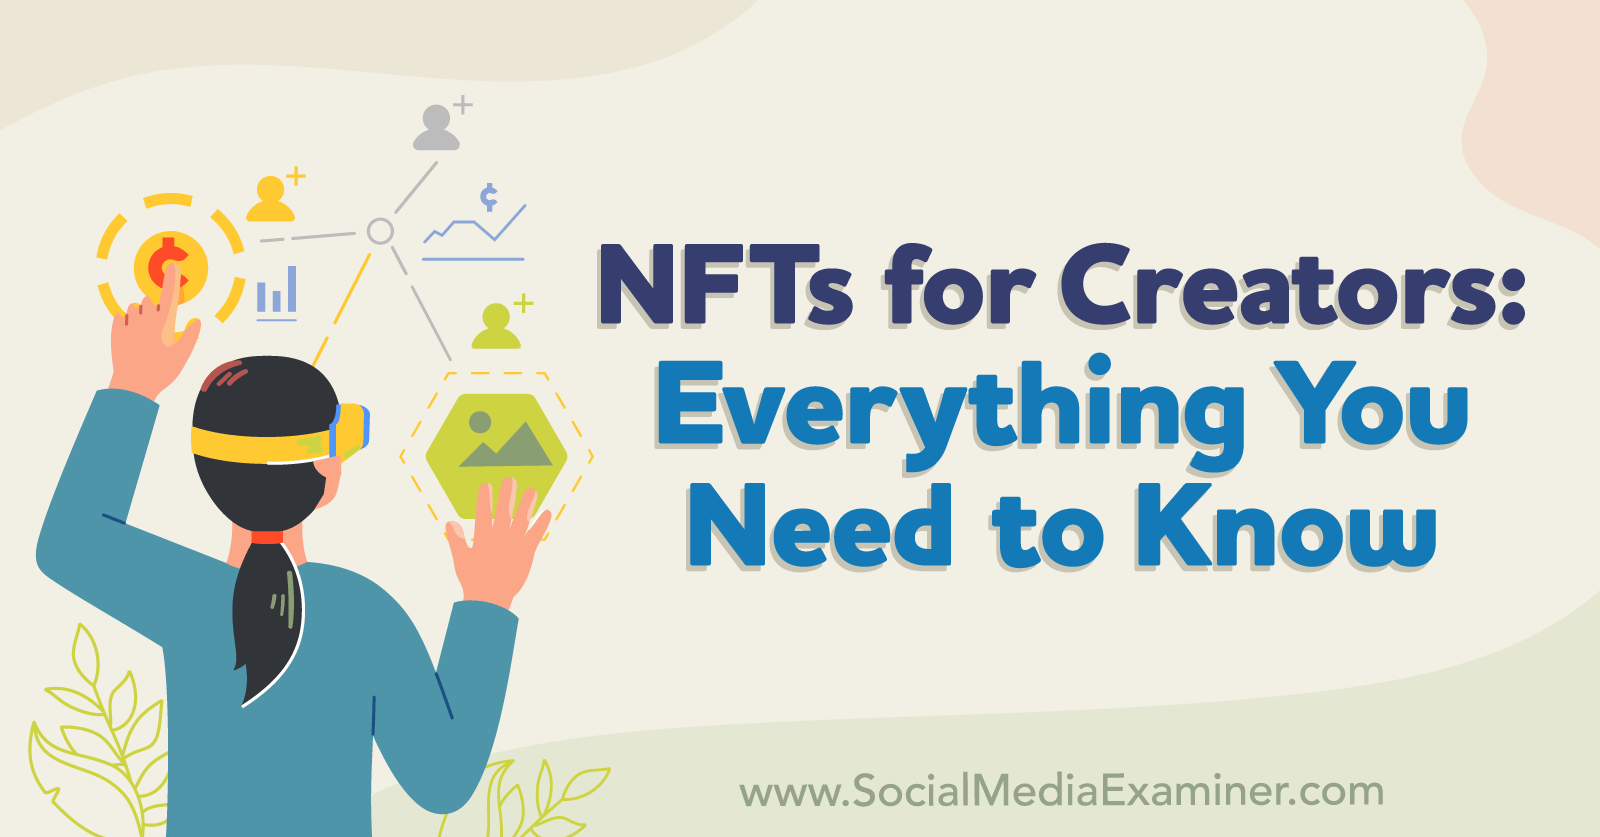 NFTs-for-Creators-by-social-media-examiner